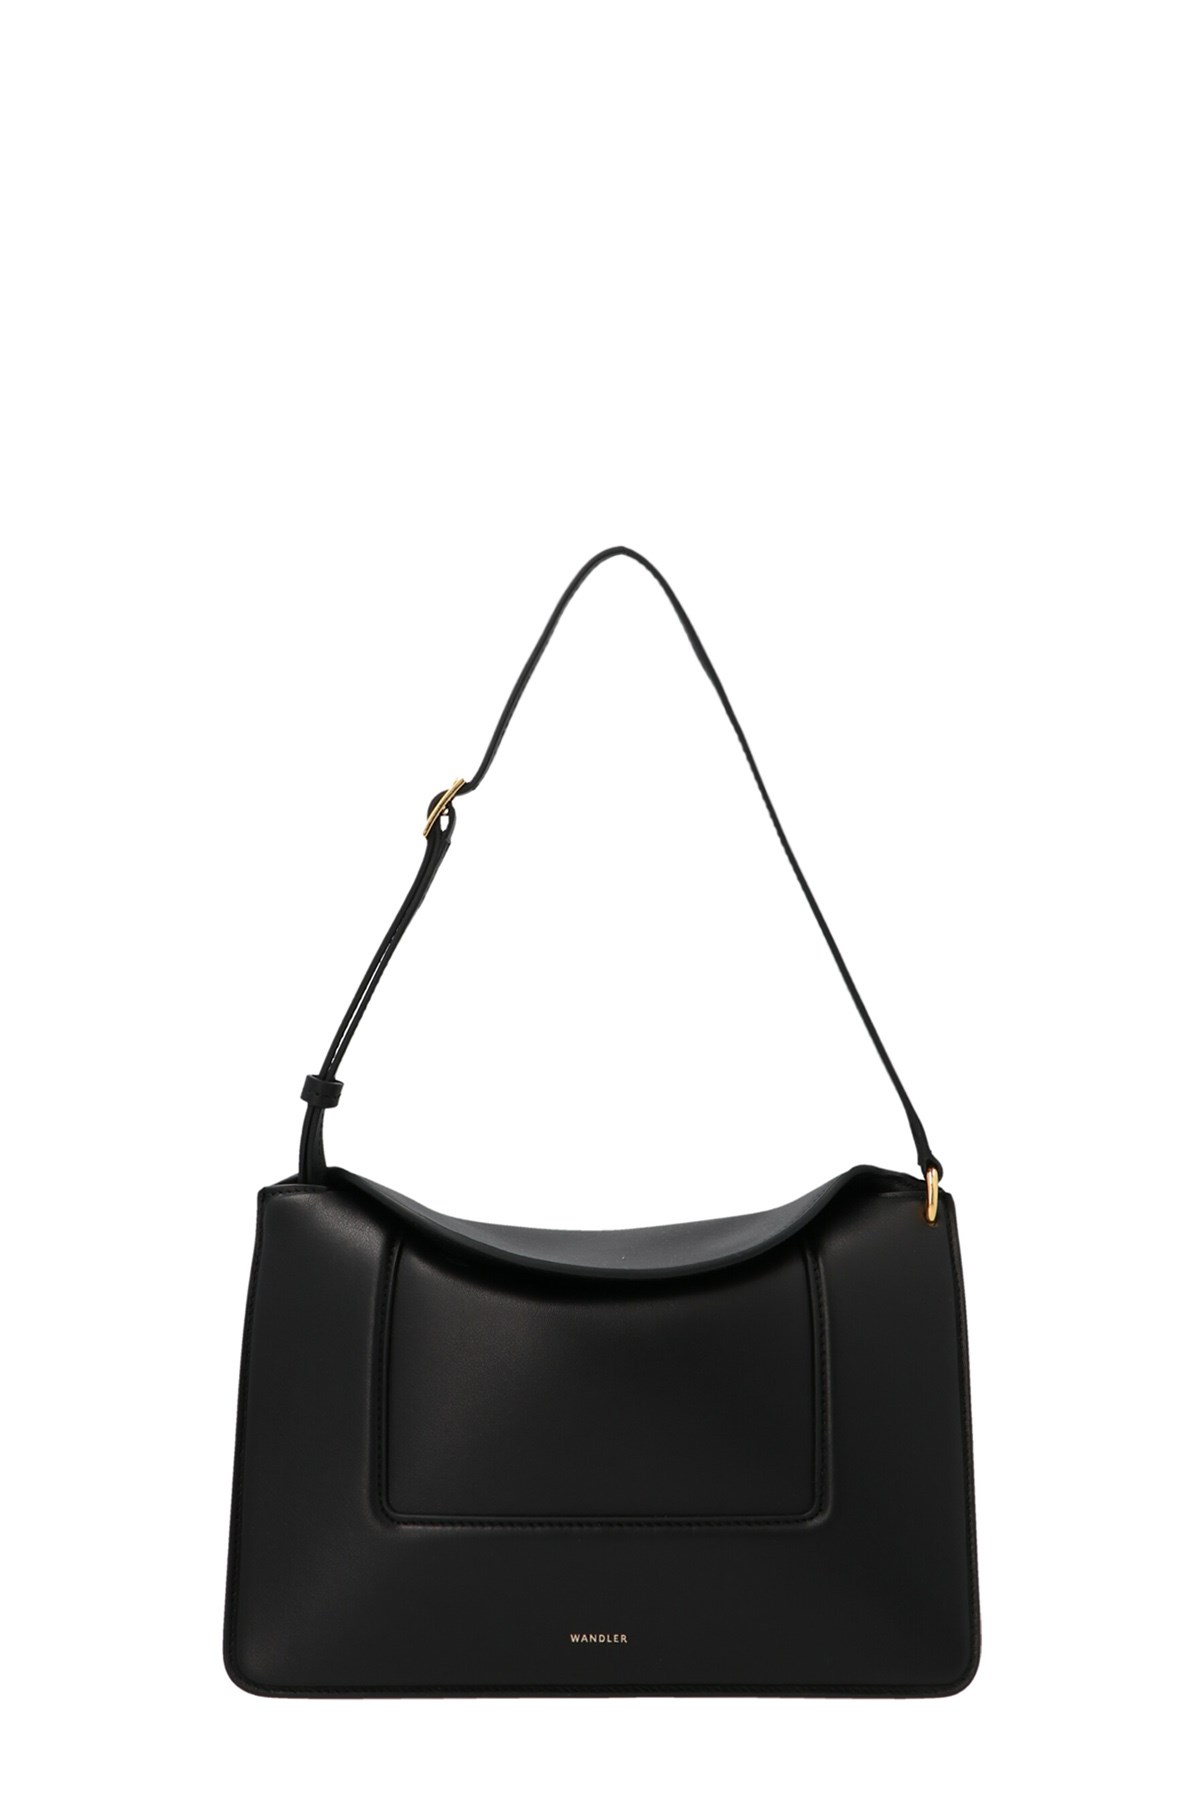 WANDLER 'Penelope’ Shoulder Bag